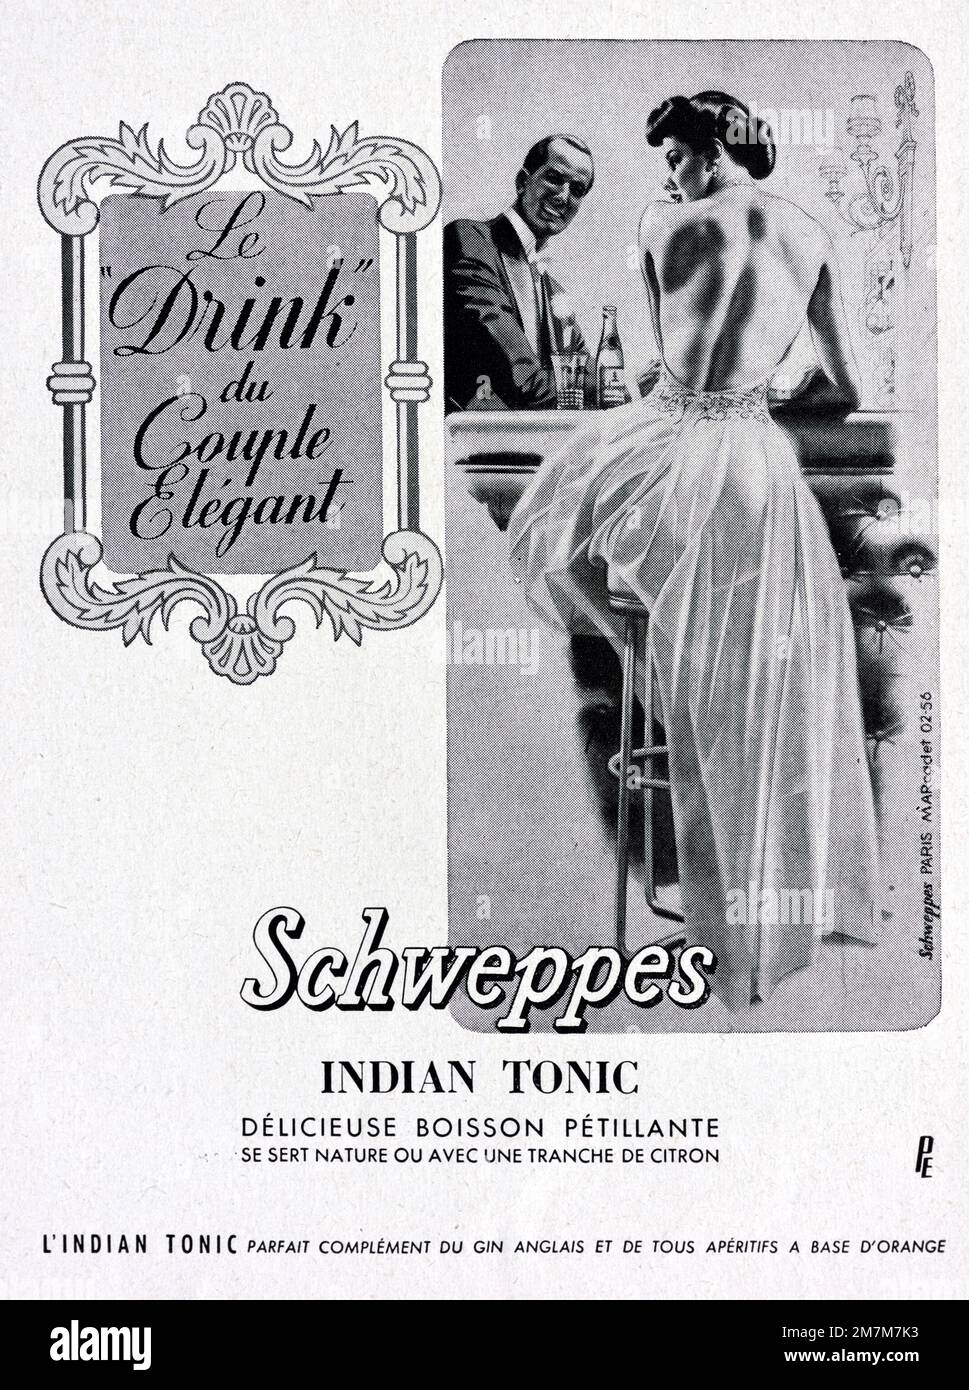 Publicité, publicité, publicité ou illustration vintage ou ancienne pour Schweppes Publicité tonale indienne 1956 avec élégant jeune couple en robe formelle ou mode 1950s Banque D'Images